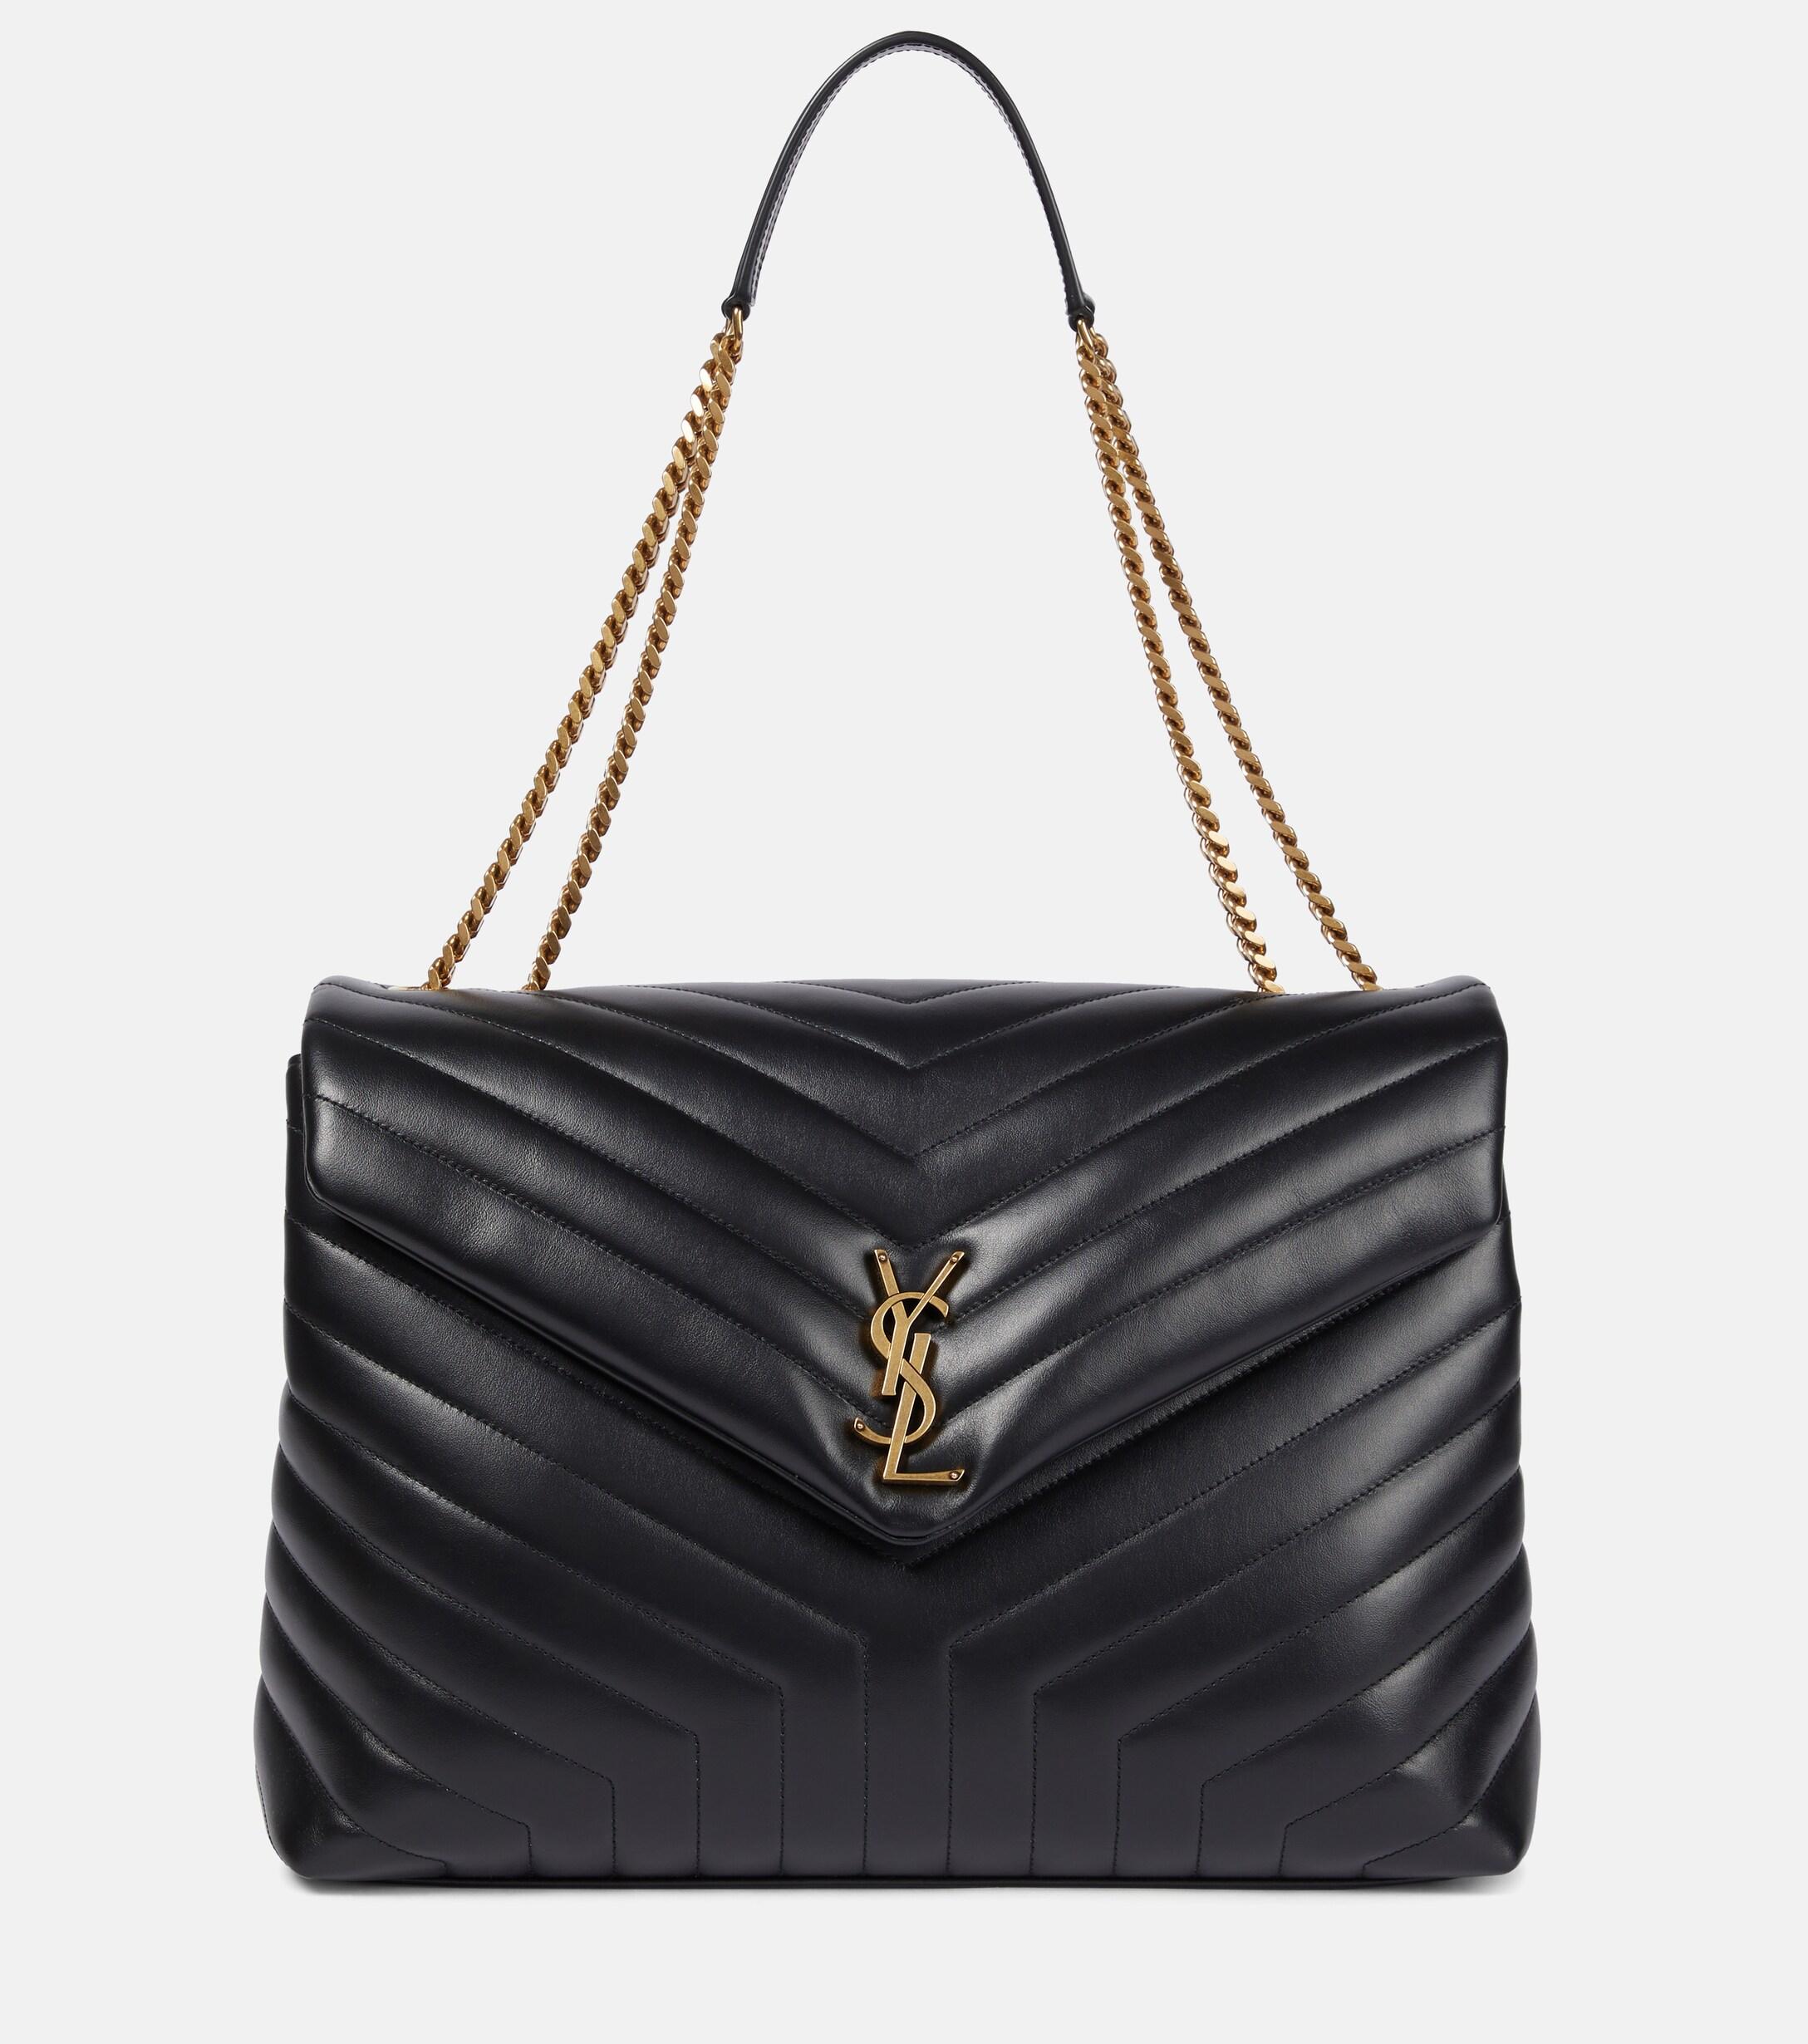 Saint Laurent Loulou Large Leather Shoulder Bag in Black | Lyst UK